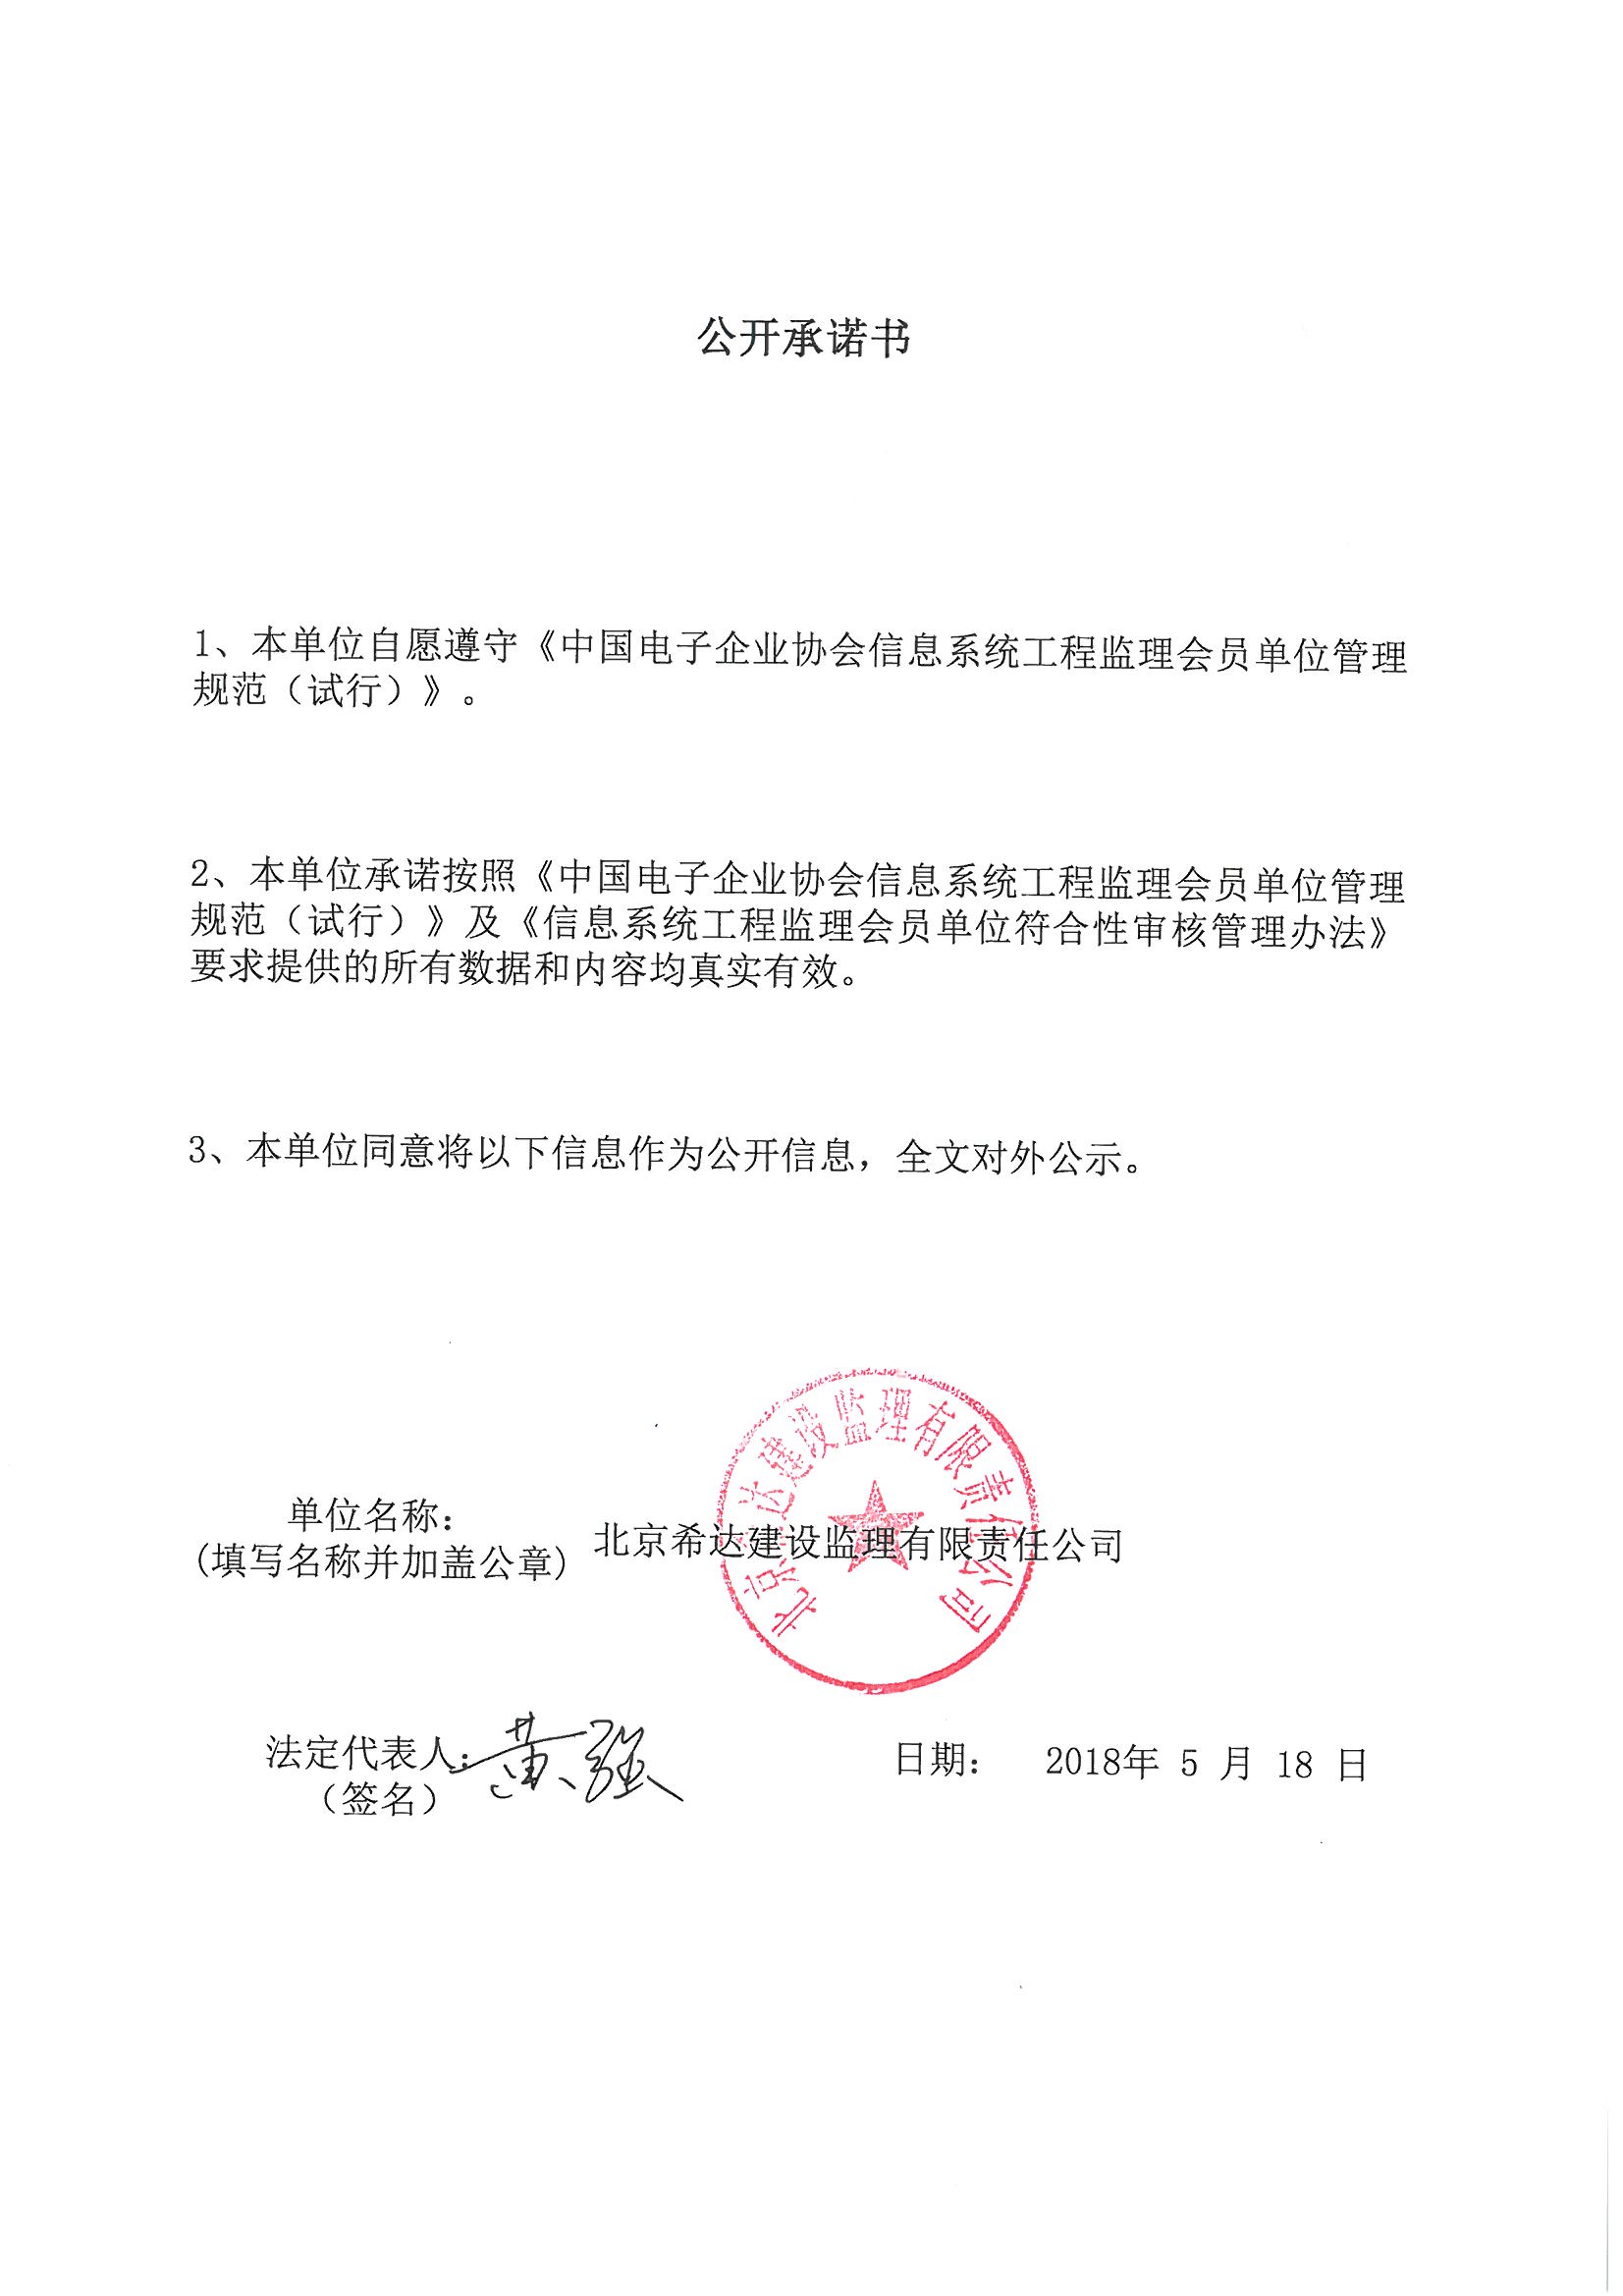 北京希达建设监理有限责任公司信息系统工程监理资质证书